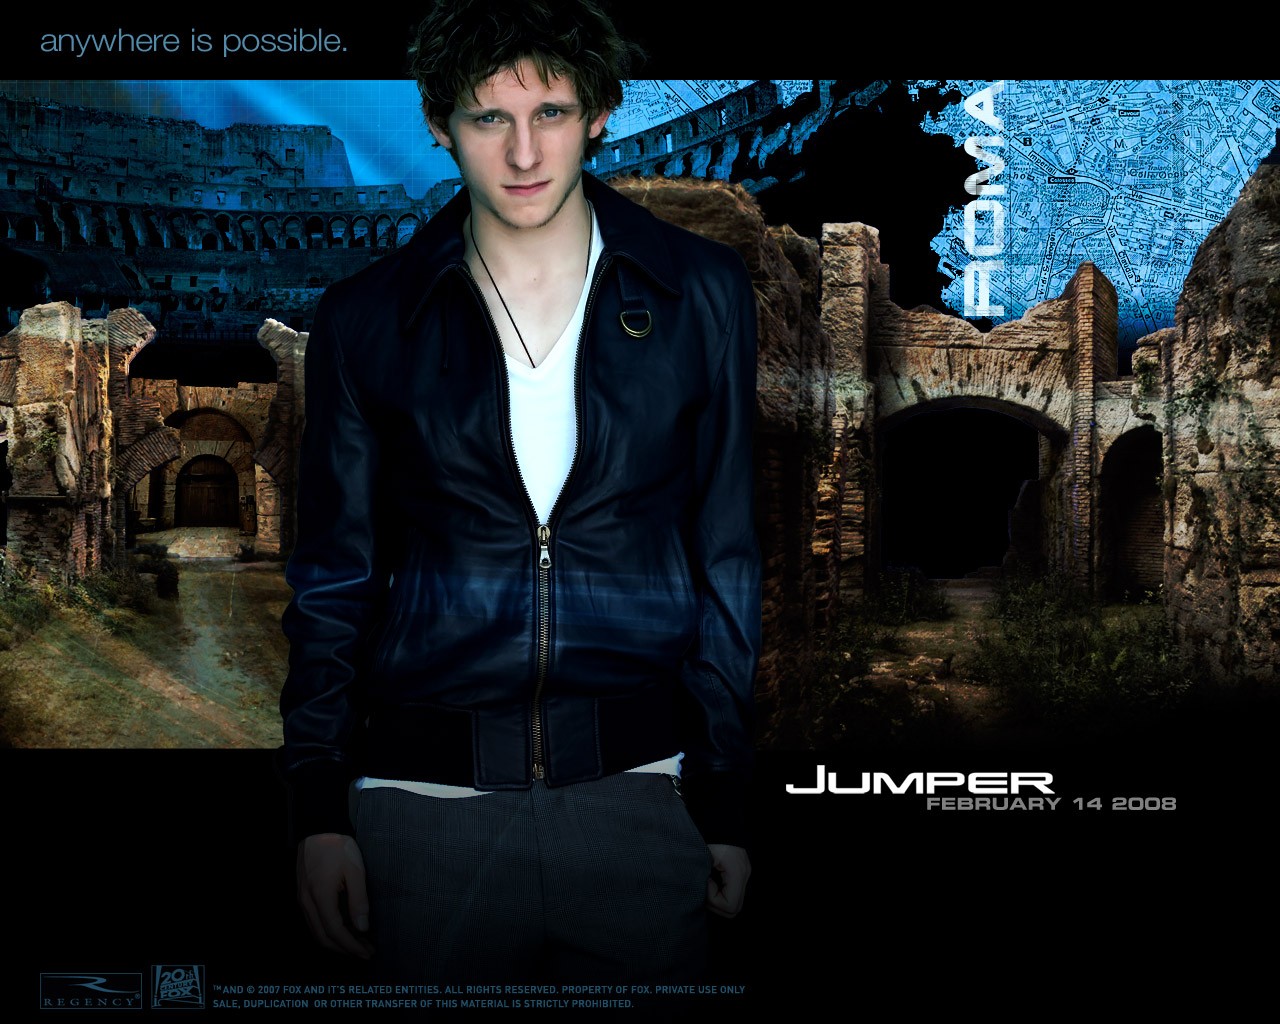 Download HQ Jumper wallpaper / Movies / 1280x1024